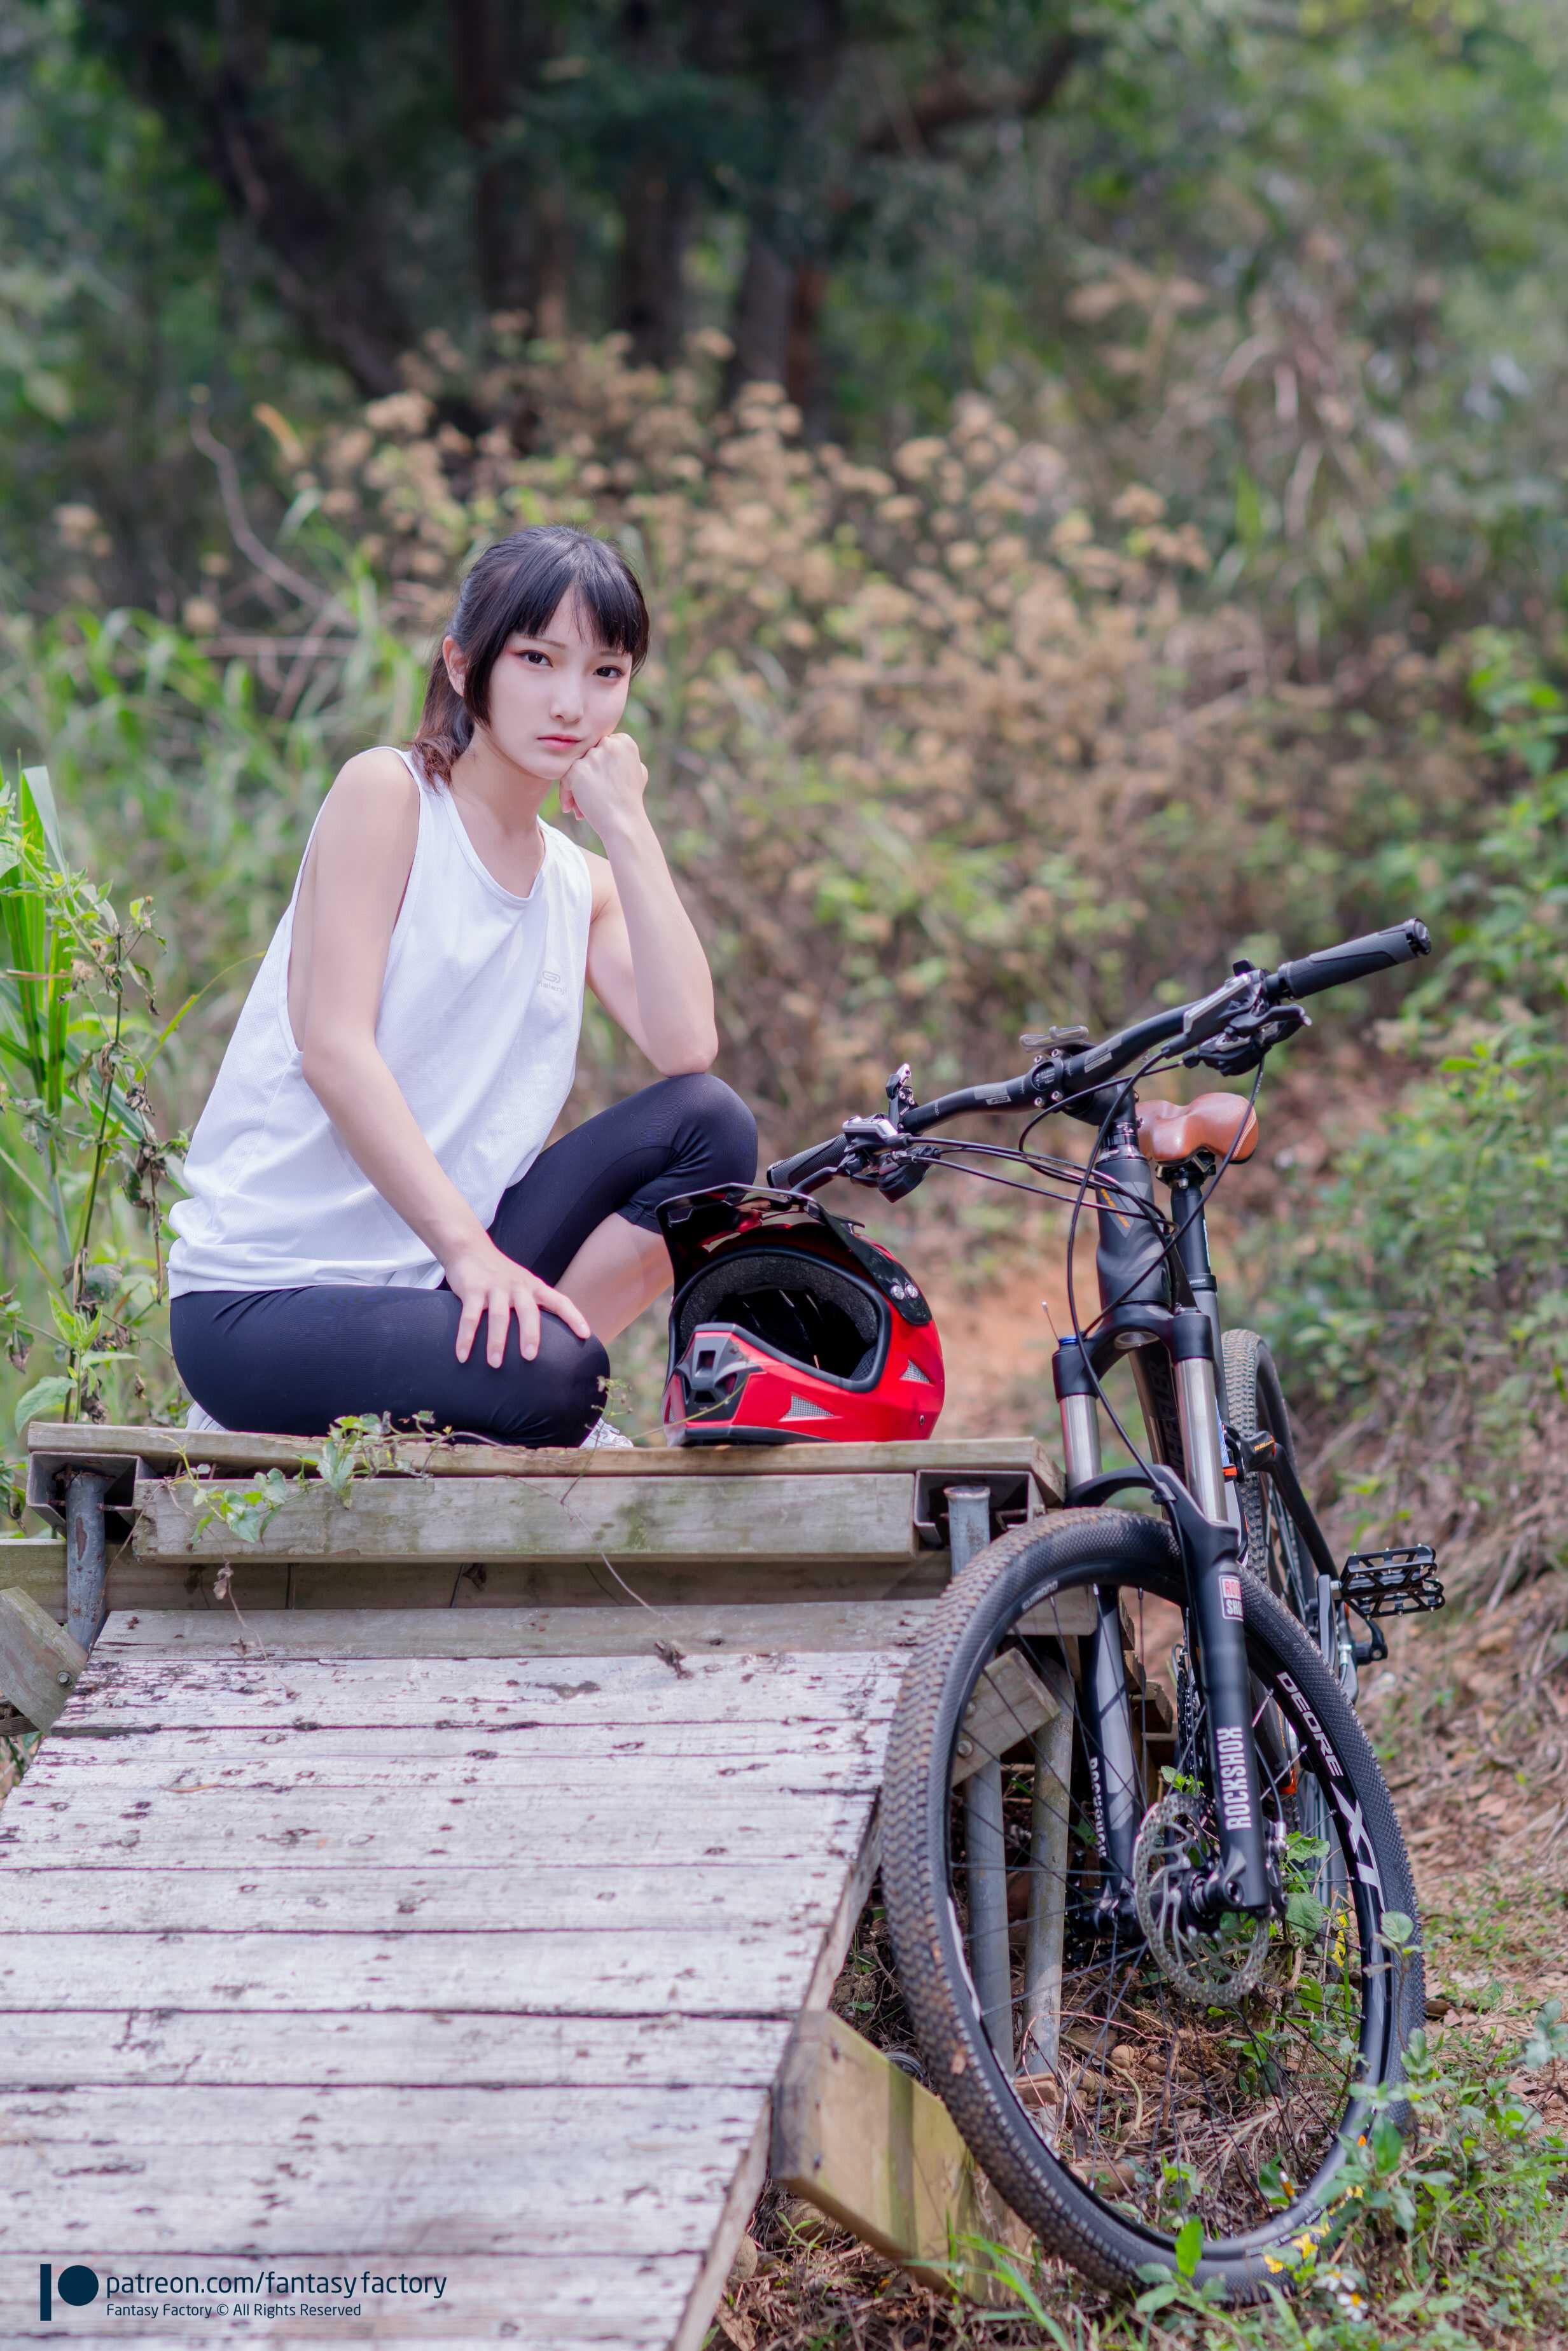 Отправьтесь на велосипеде в дикую природу и разоблачите себя